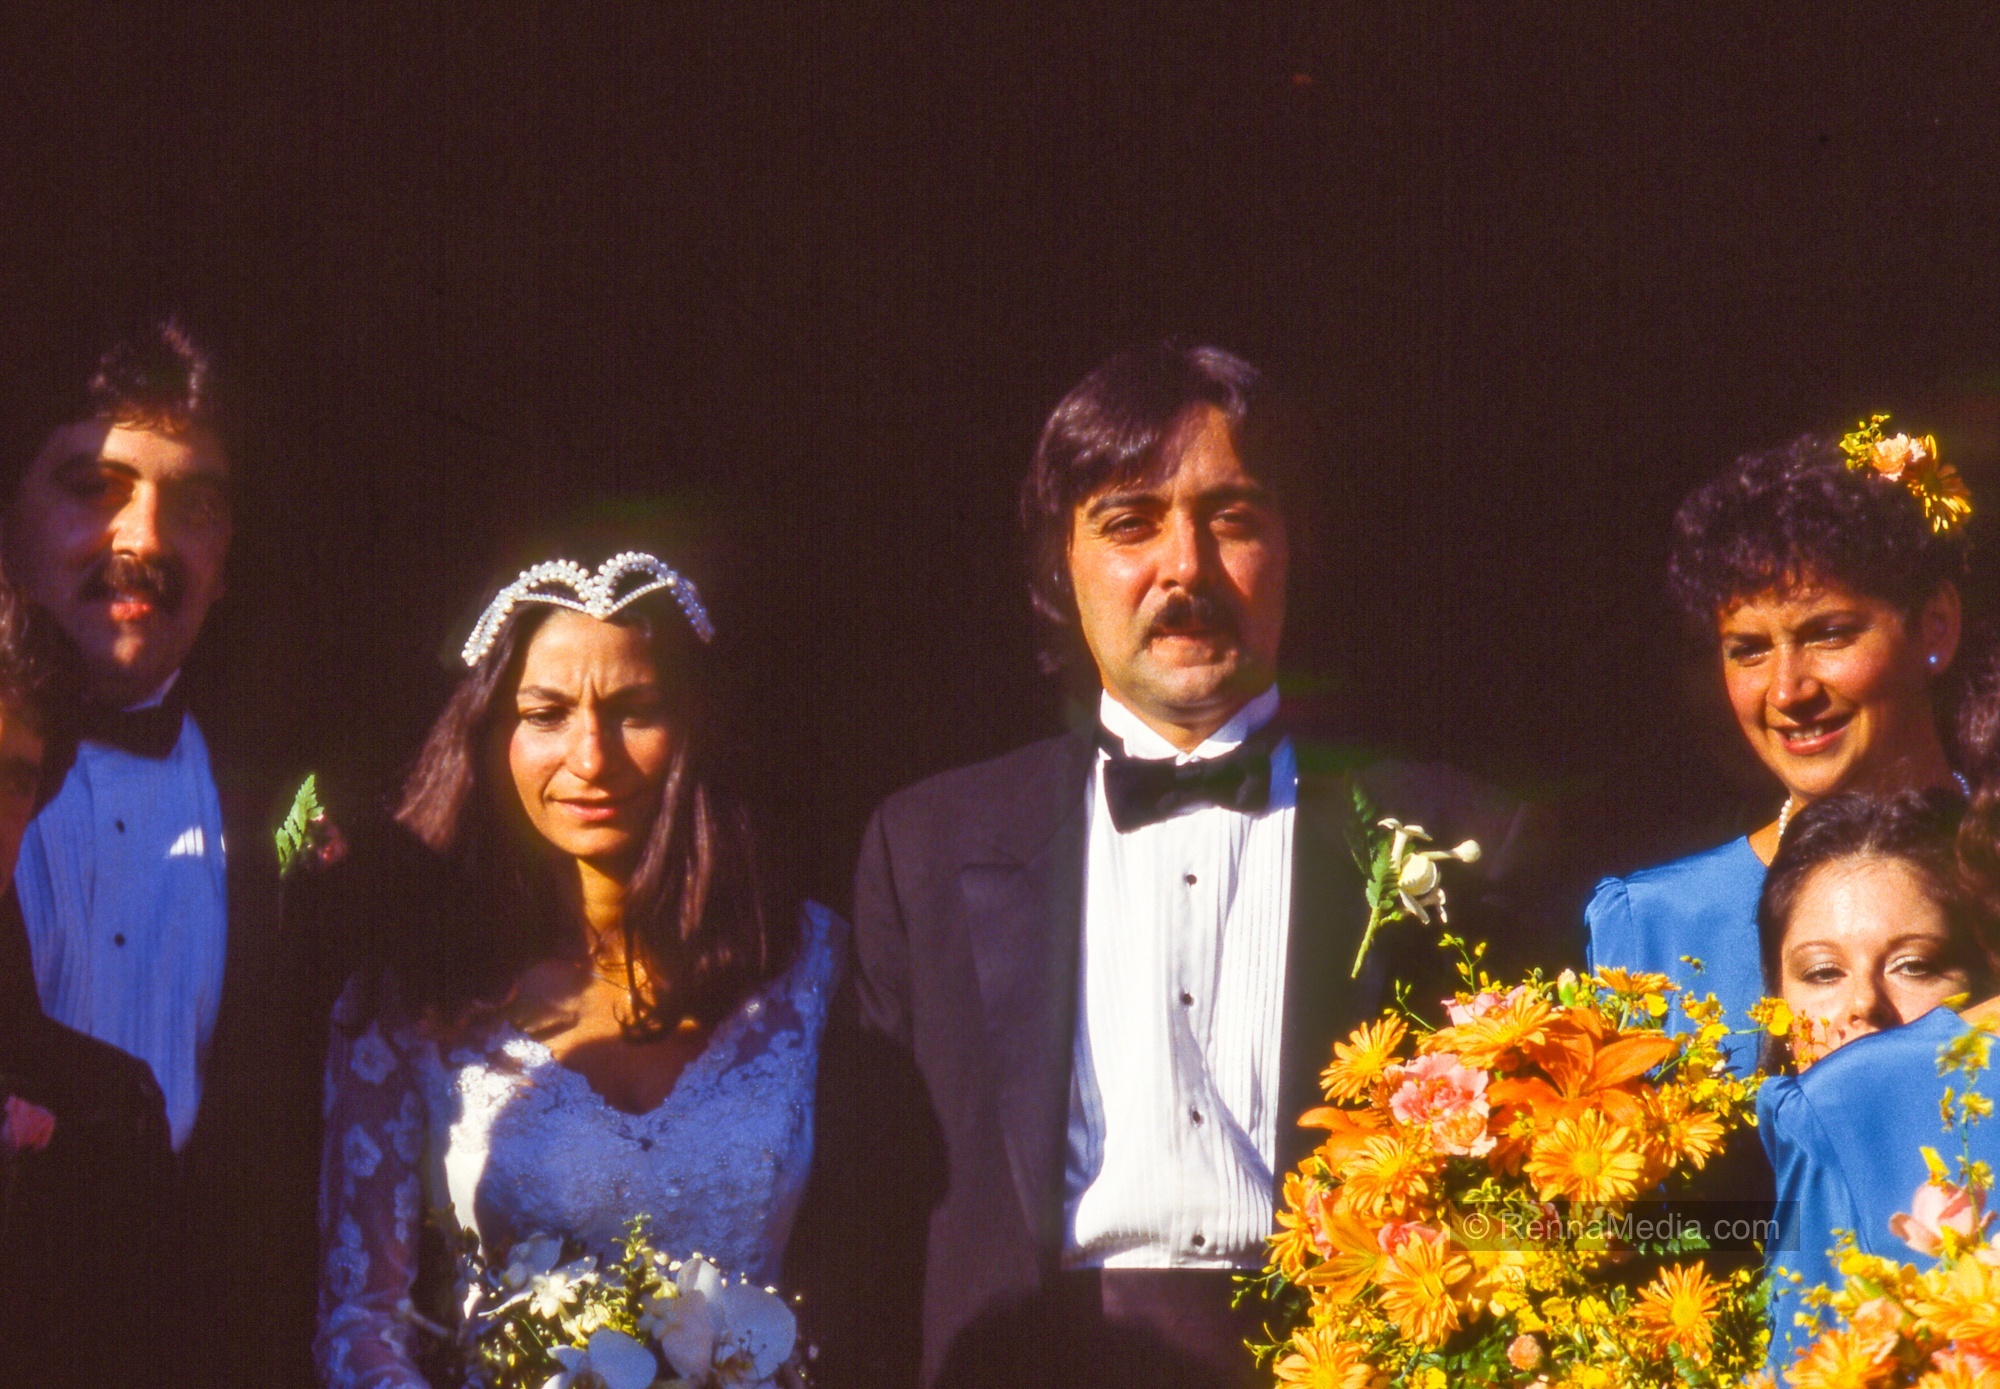 Rita and Louie Labrutto Wedding 1986